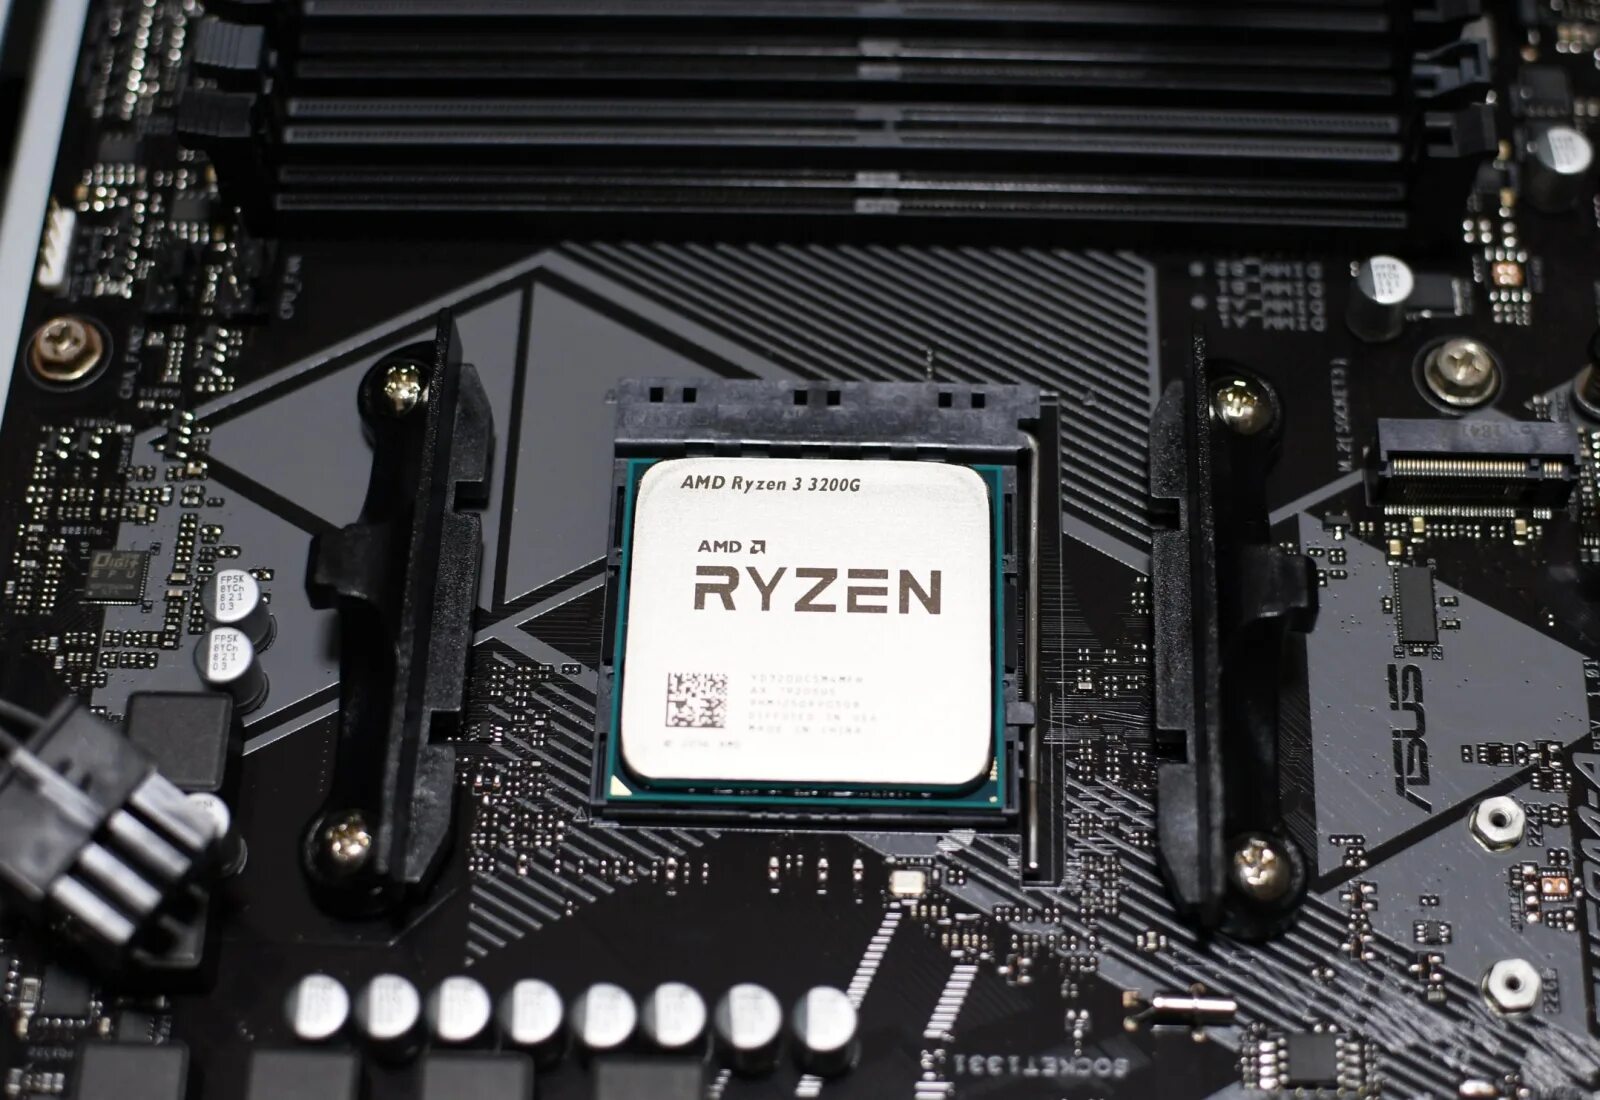 Ryzen 3200g. AMD Ryzen 3 Pro 3200g. Процессор AMD Ryzen 3 3200g Box. Процессор AMD Ryzen 3 3200g am4. Ryzen 3 pro 3200g